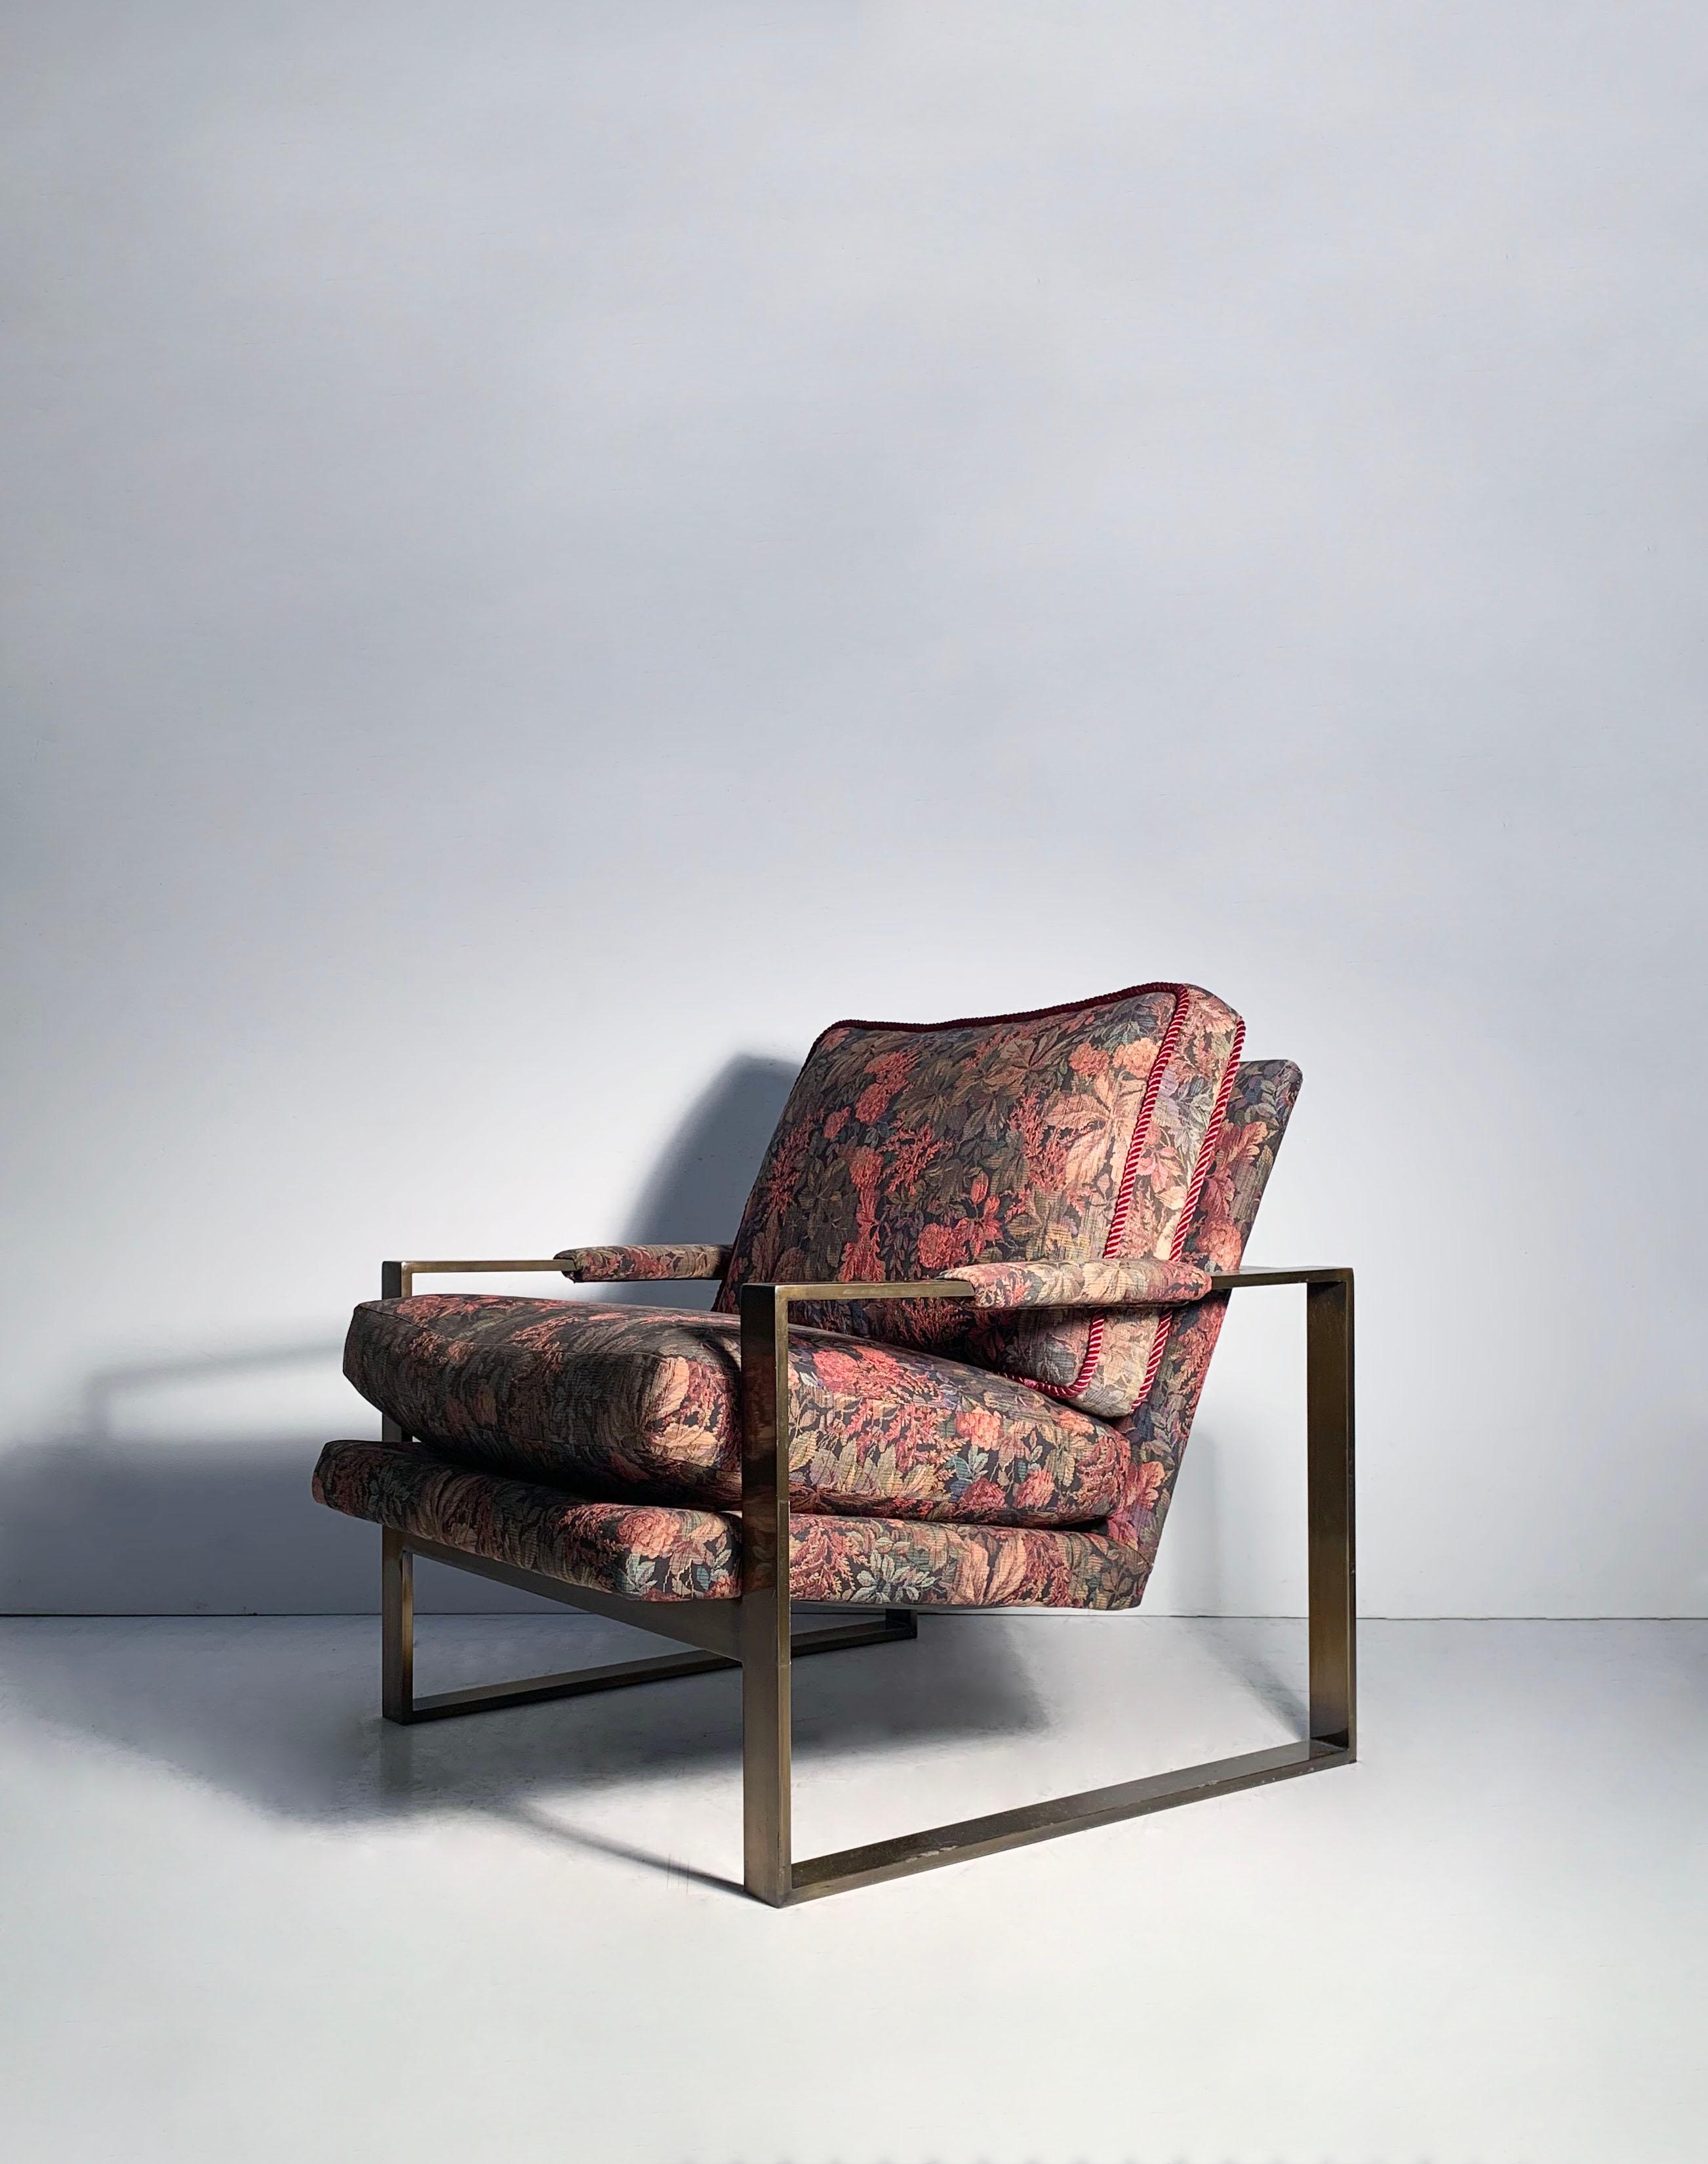 PAIRE de chaises longues vintage Milo Baughman à base de traîneaux et finition bronze.

Ces meubles ont été retapissés dans les années 90 et doivent être achetés avec l'intention de les retapisser car le tissu est fortement décoloré par endroits.